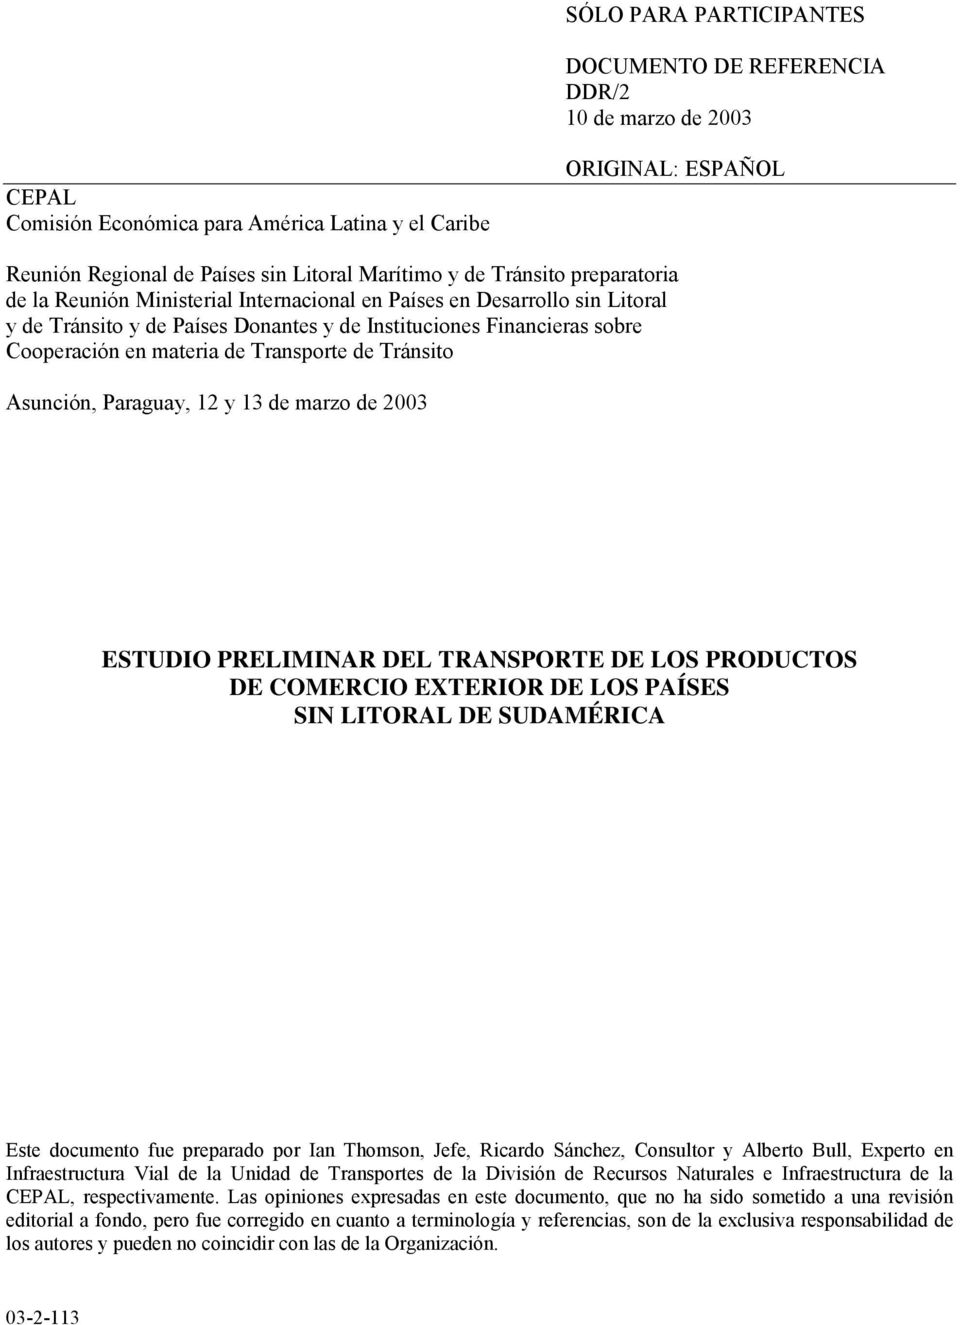 Transporte de Tránsito Asunción, Paraguay, 12 y 13 de marzo de 2003 ESTUDIO PRELIMINAR DEL TRANSPORTE DE LOS PRODUCTOS DE COMERCIO EXTERIOR DE LOS PAÍSES SIN LITORAL DE SUDAMÉRICA Este documento fue